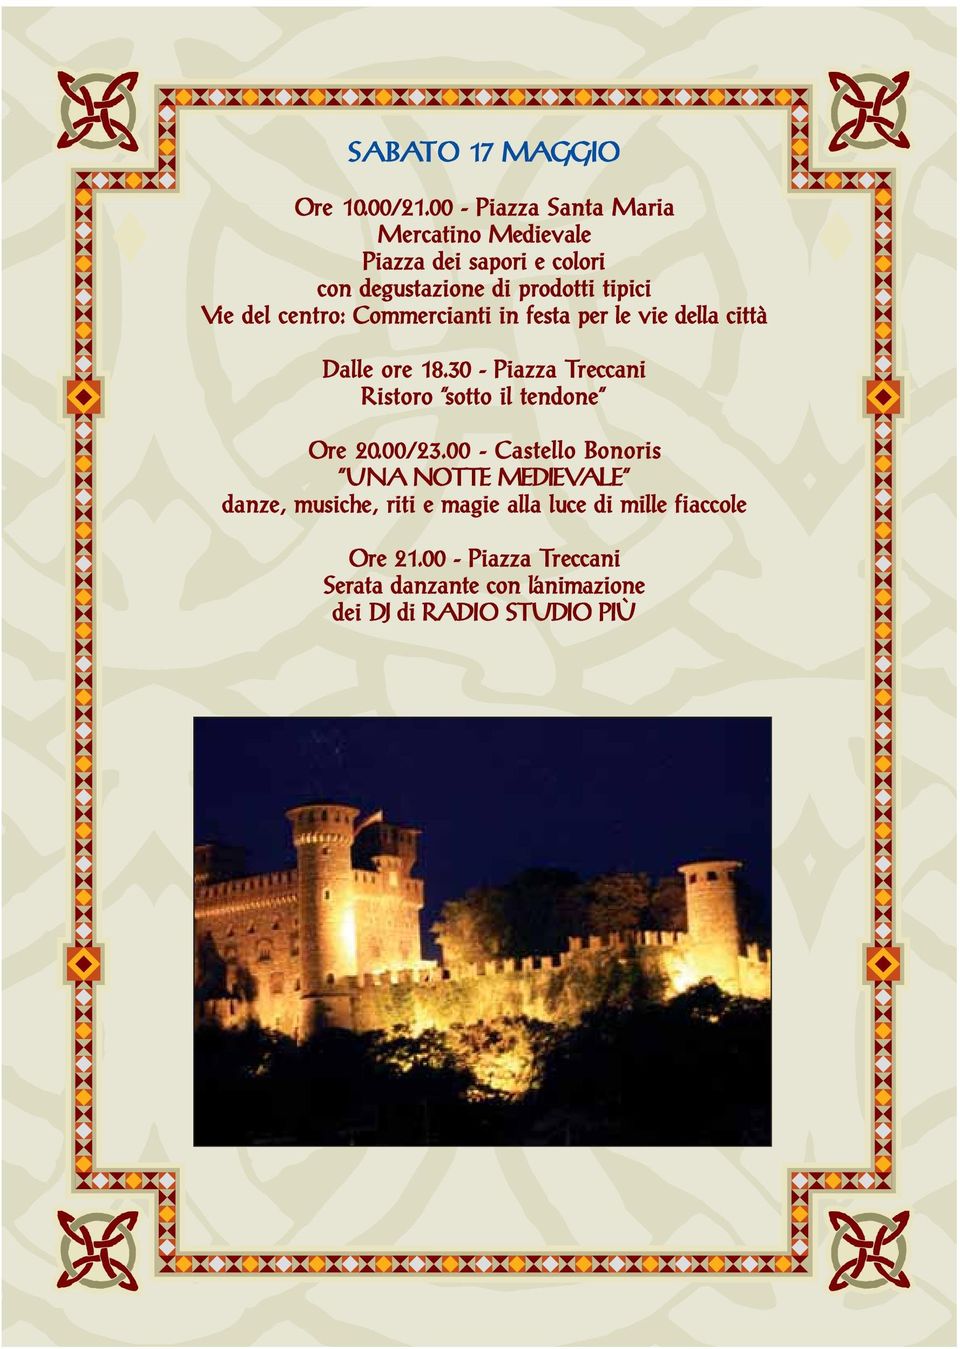 00 - Castello Bonoris UNA NOTTE MEDIEVALE danze, musiche, riti e magie